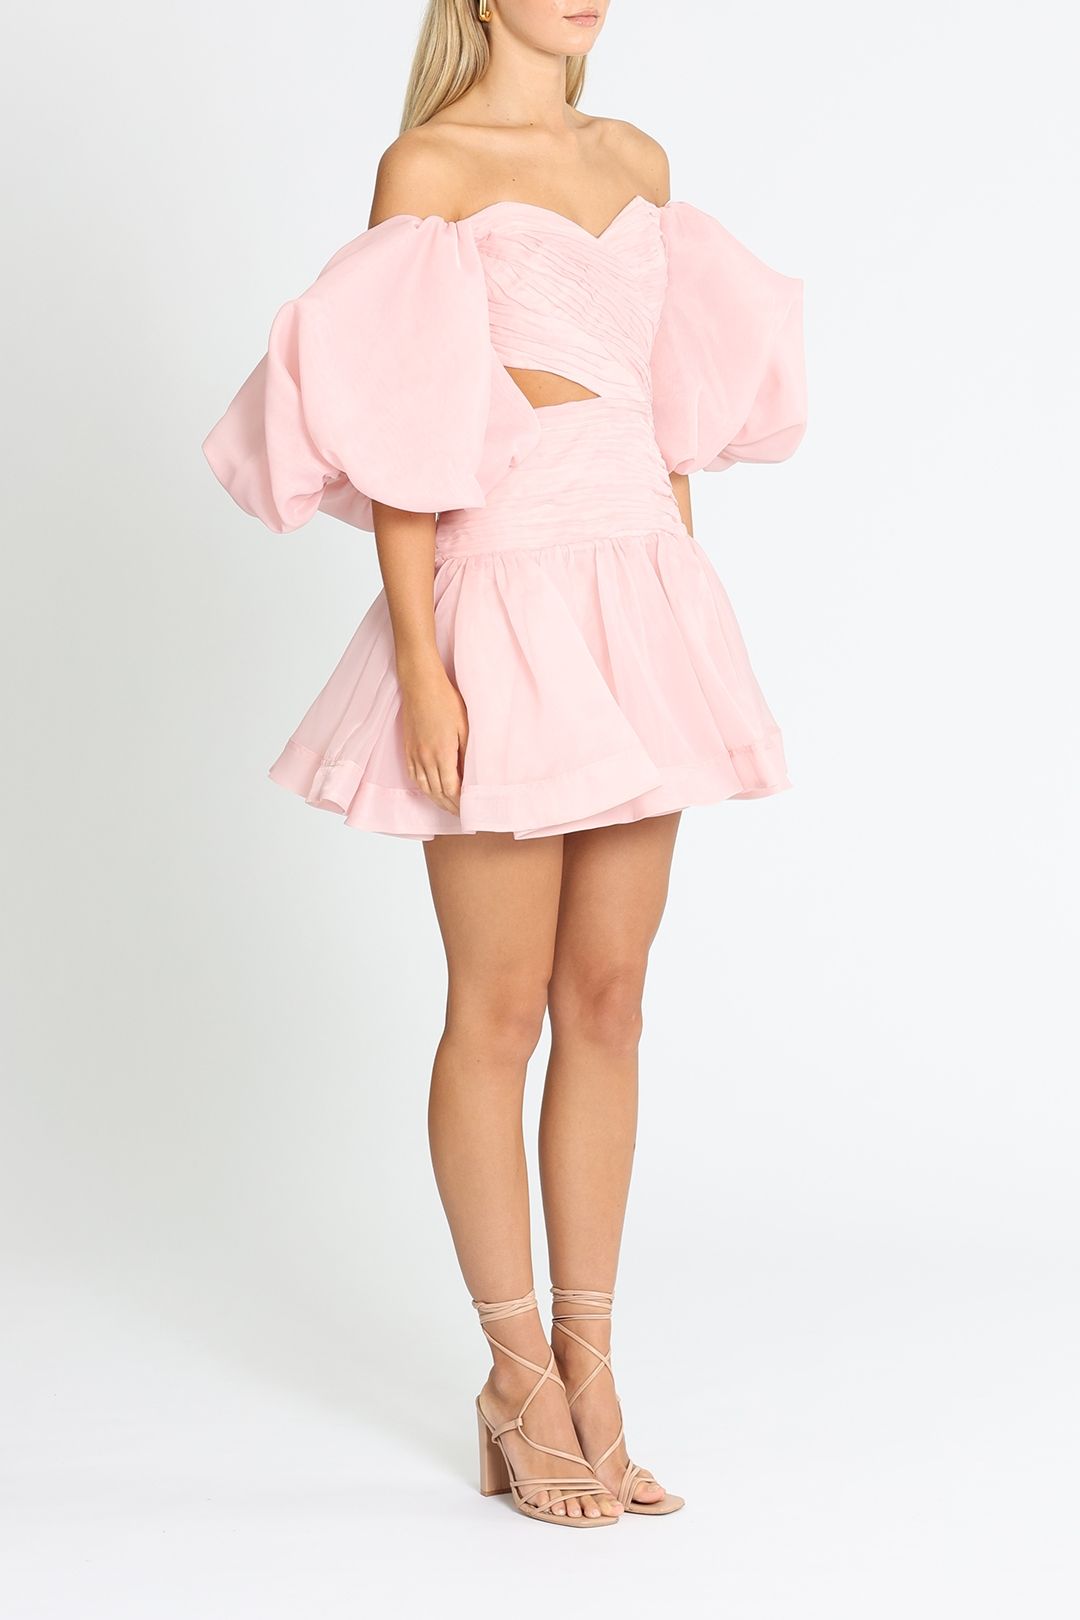 Aje Myriad Cut Out Mini Dress Pink